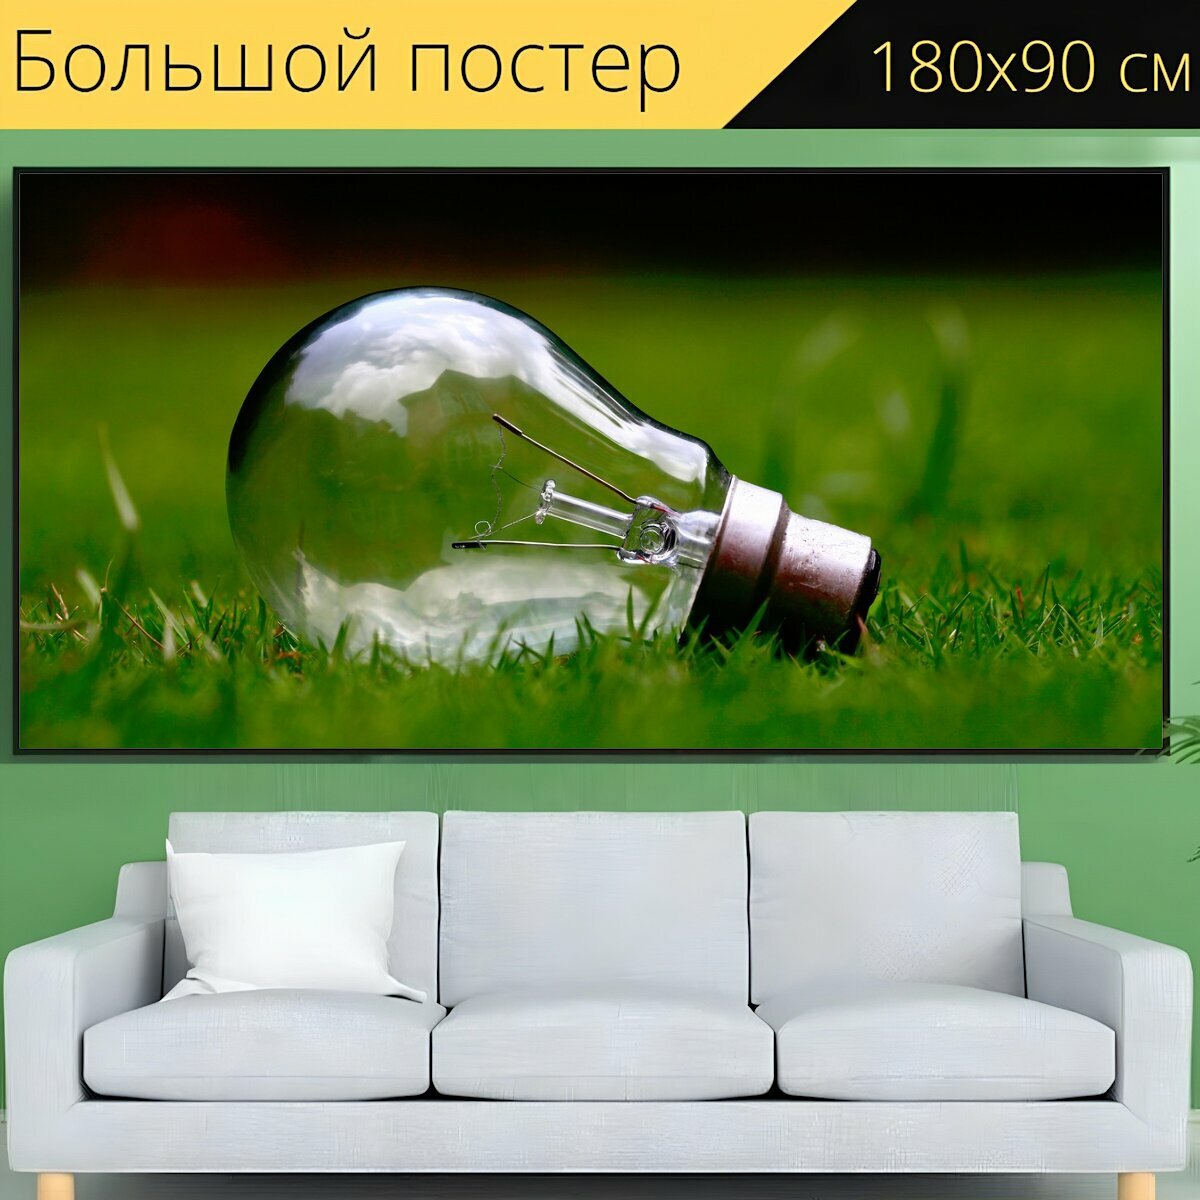 Большой постер "Напольная лампа, трава, зеленый" 180 x 90 см. для интерьера